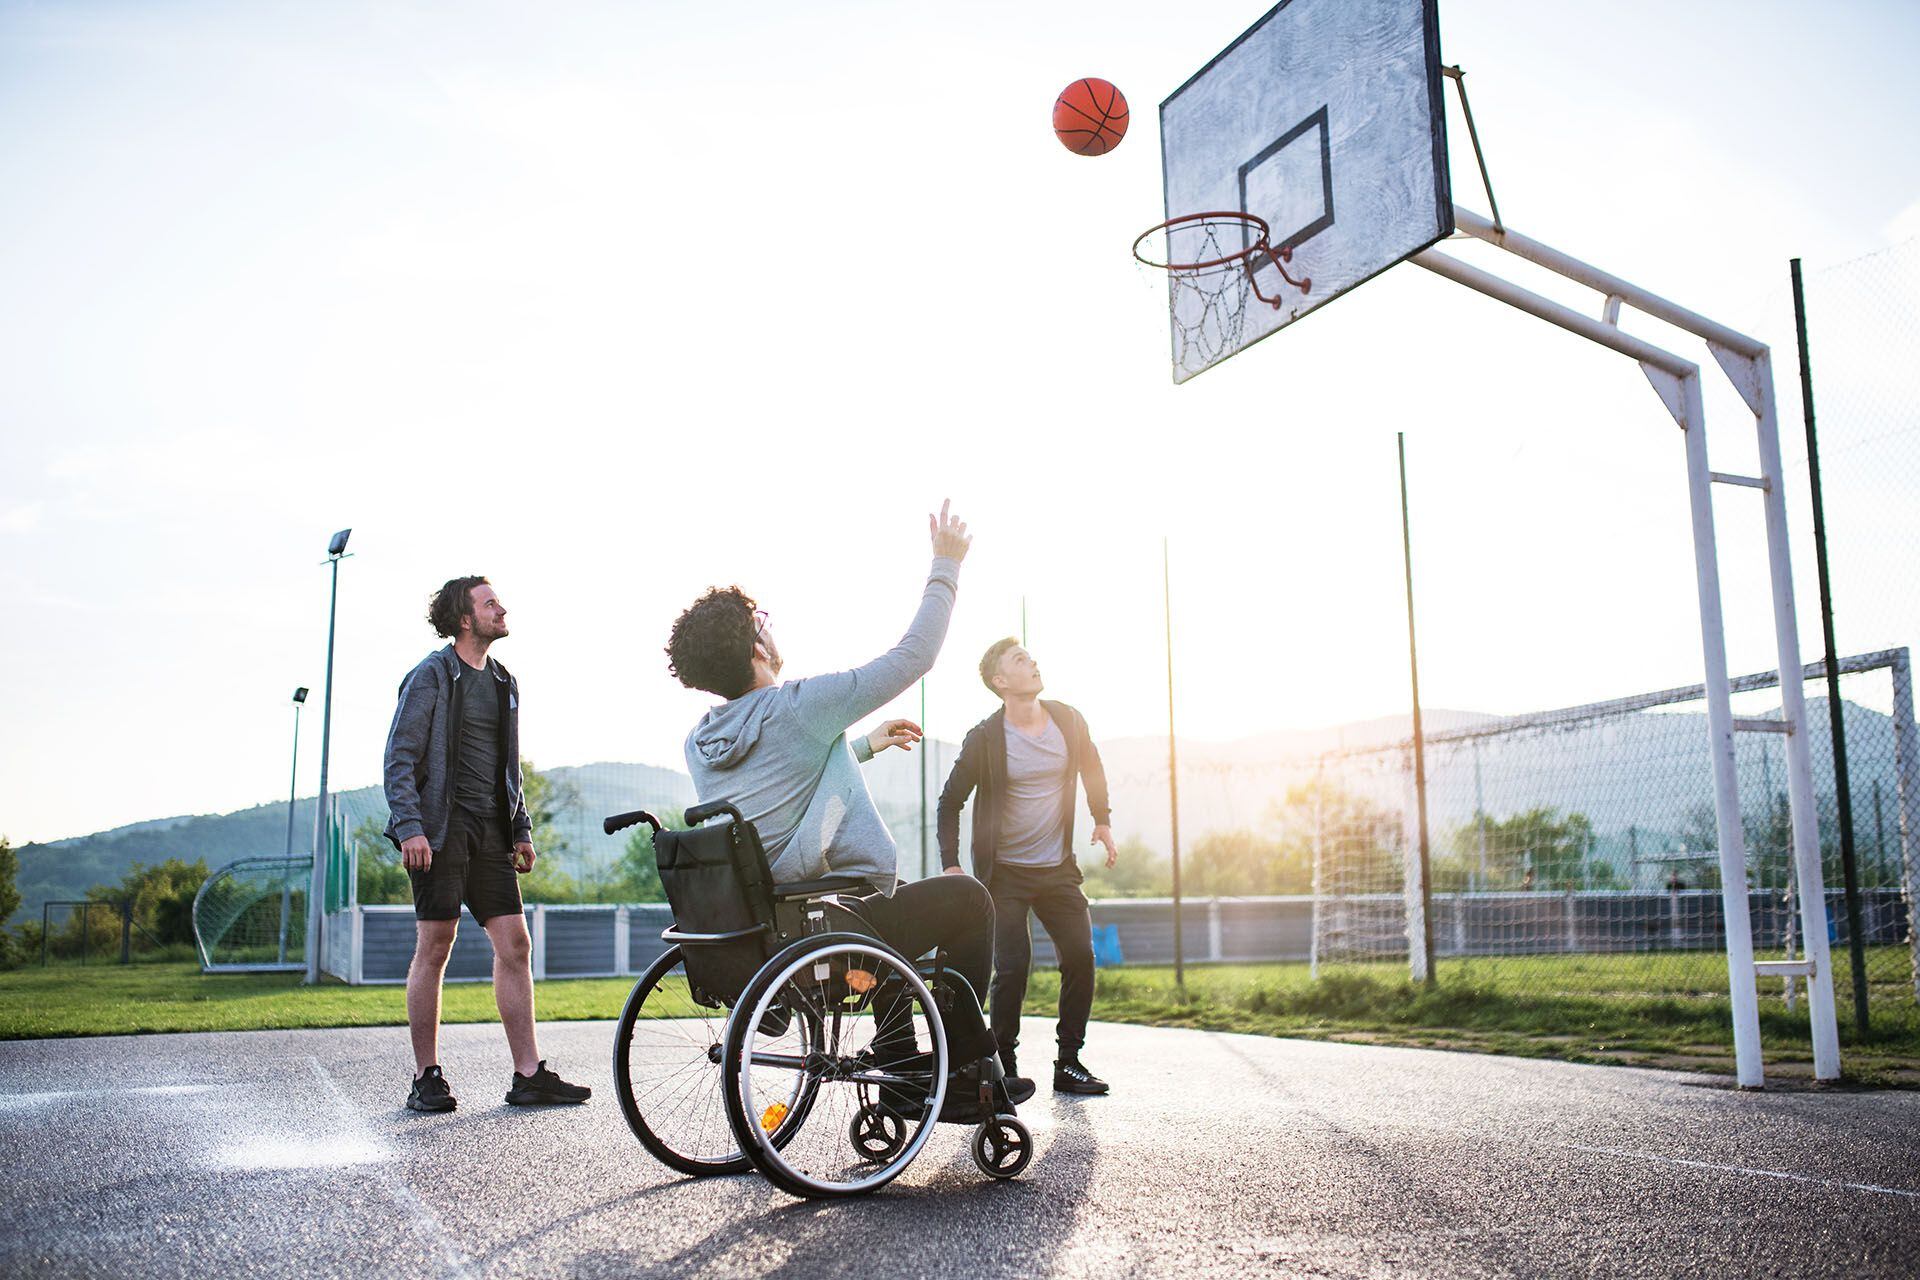 La práctica de deportes ayuda a contrarrestar los síntomas de la enfermedad (Getty Images)